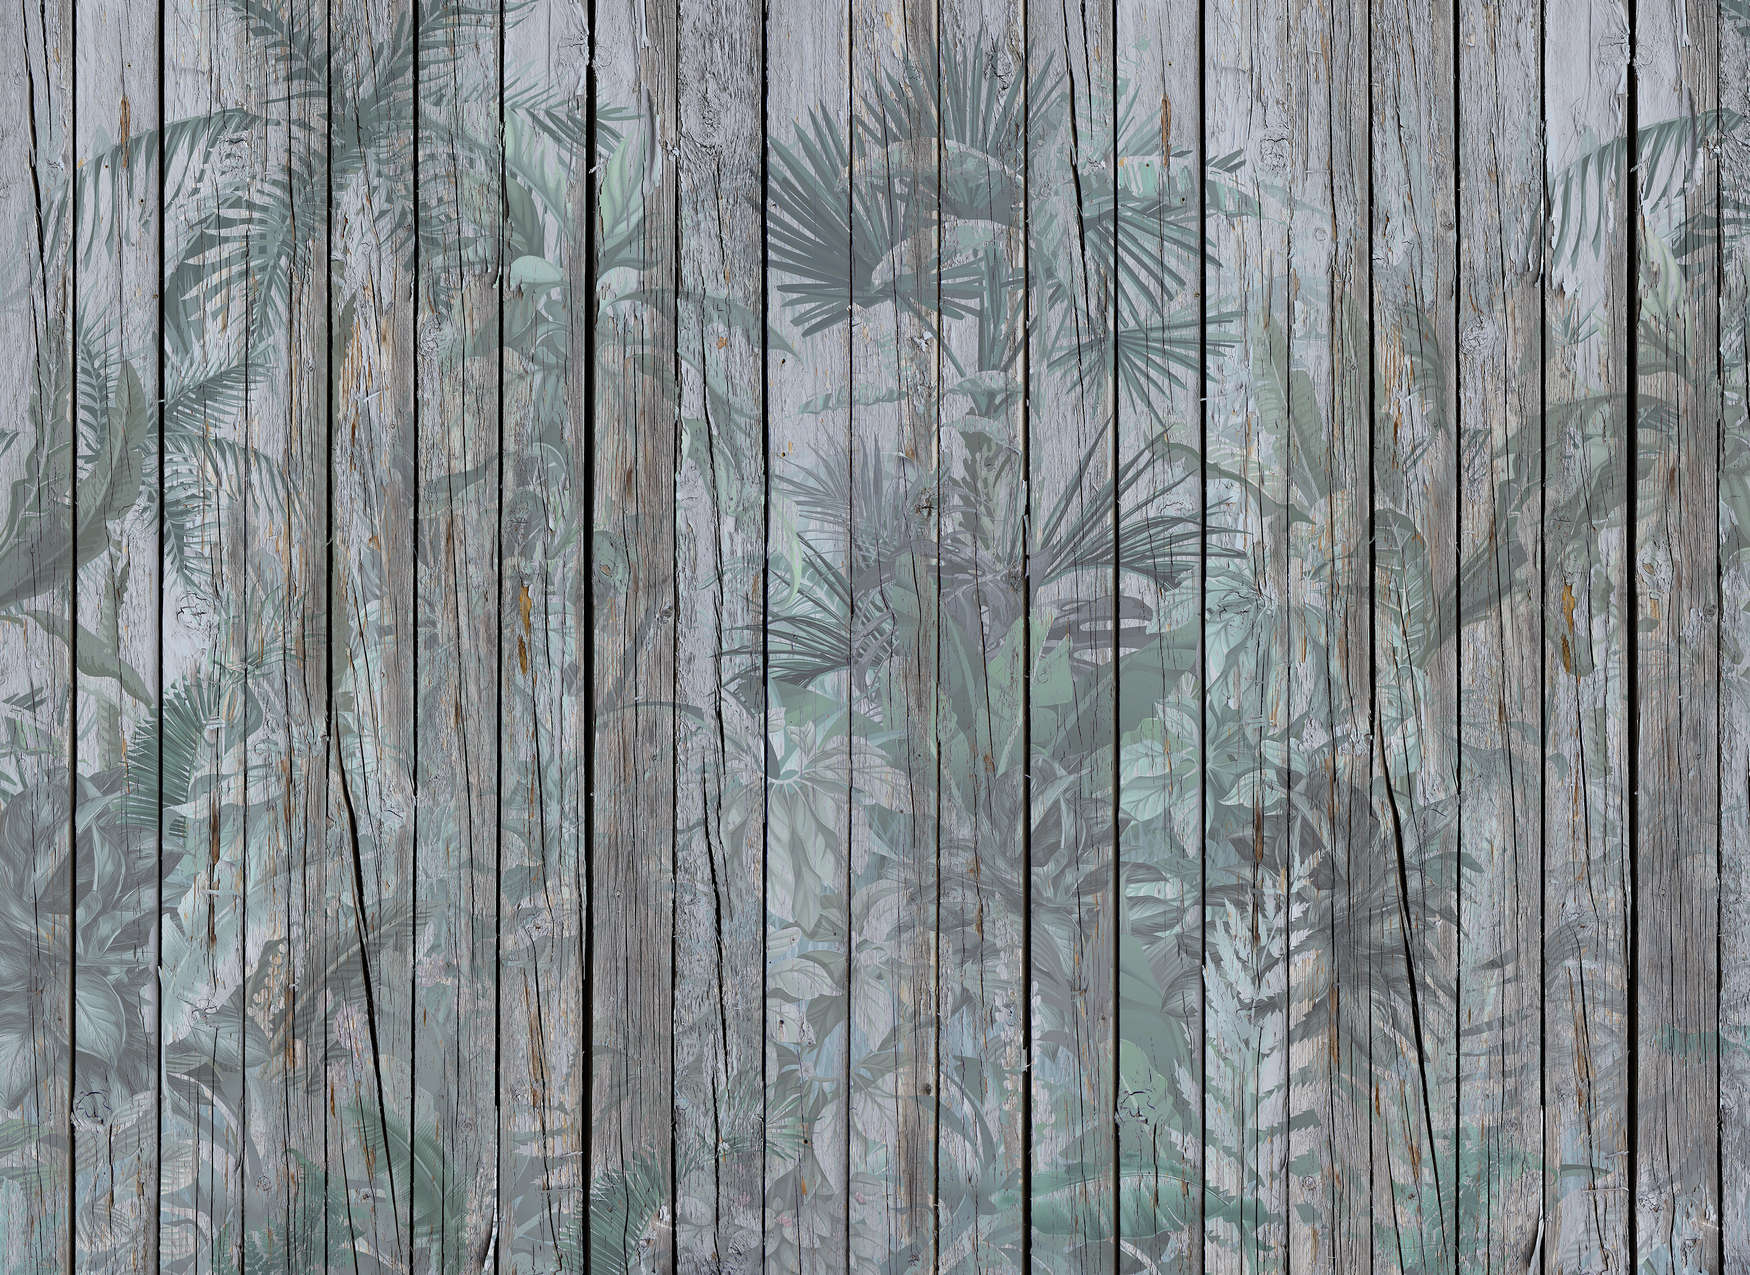             Fotomurali in legno con piante della giungla - Marrone, verde
        